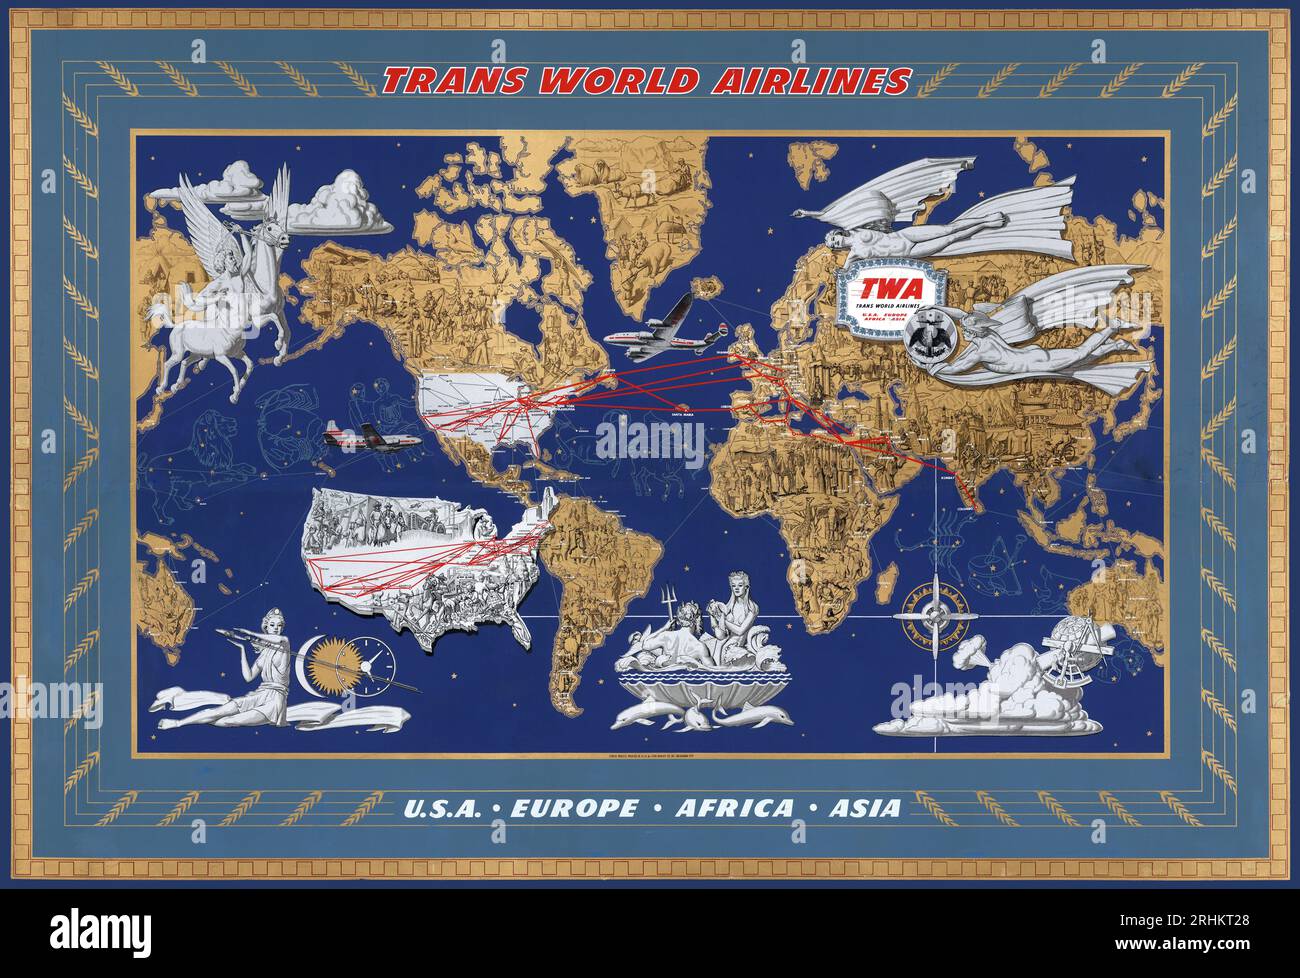 Dekorative Bildkarte der Welt - Trans World Airlines, TWA Airline Poster - Reiseplakat, 1946 Stockfoto